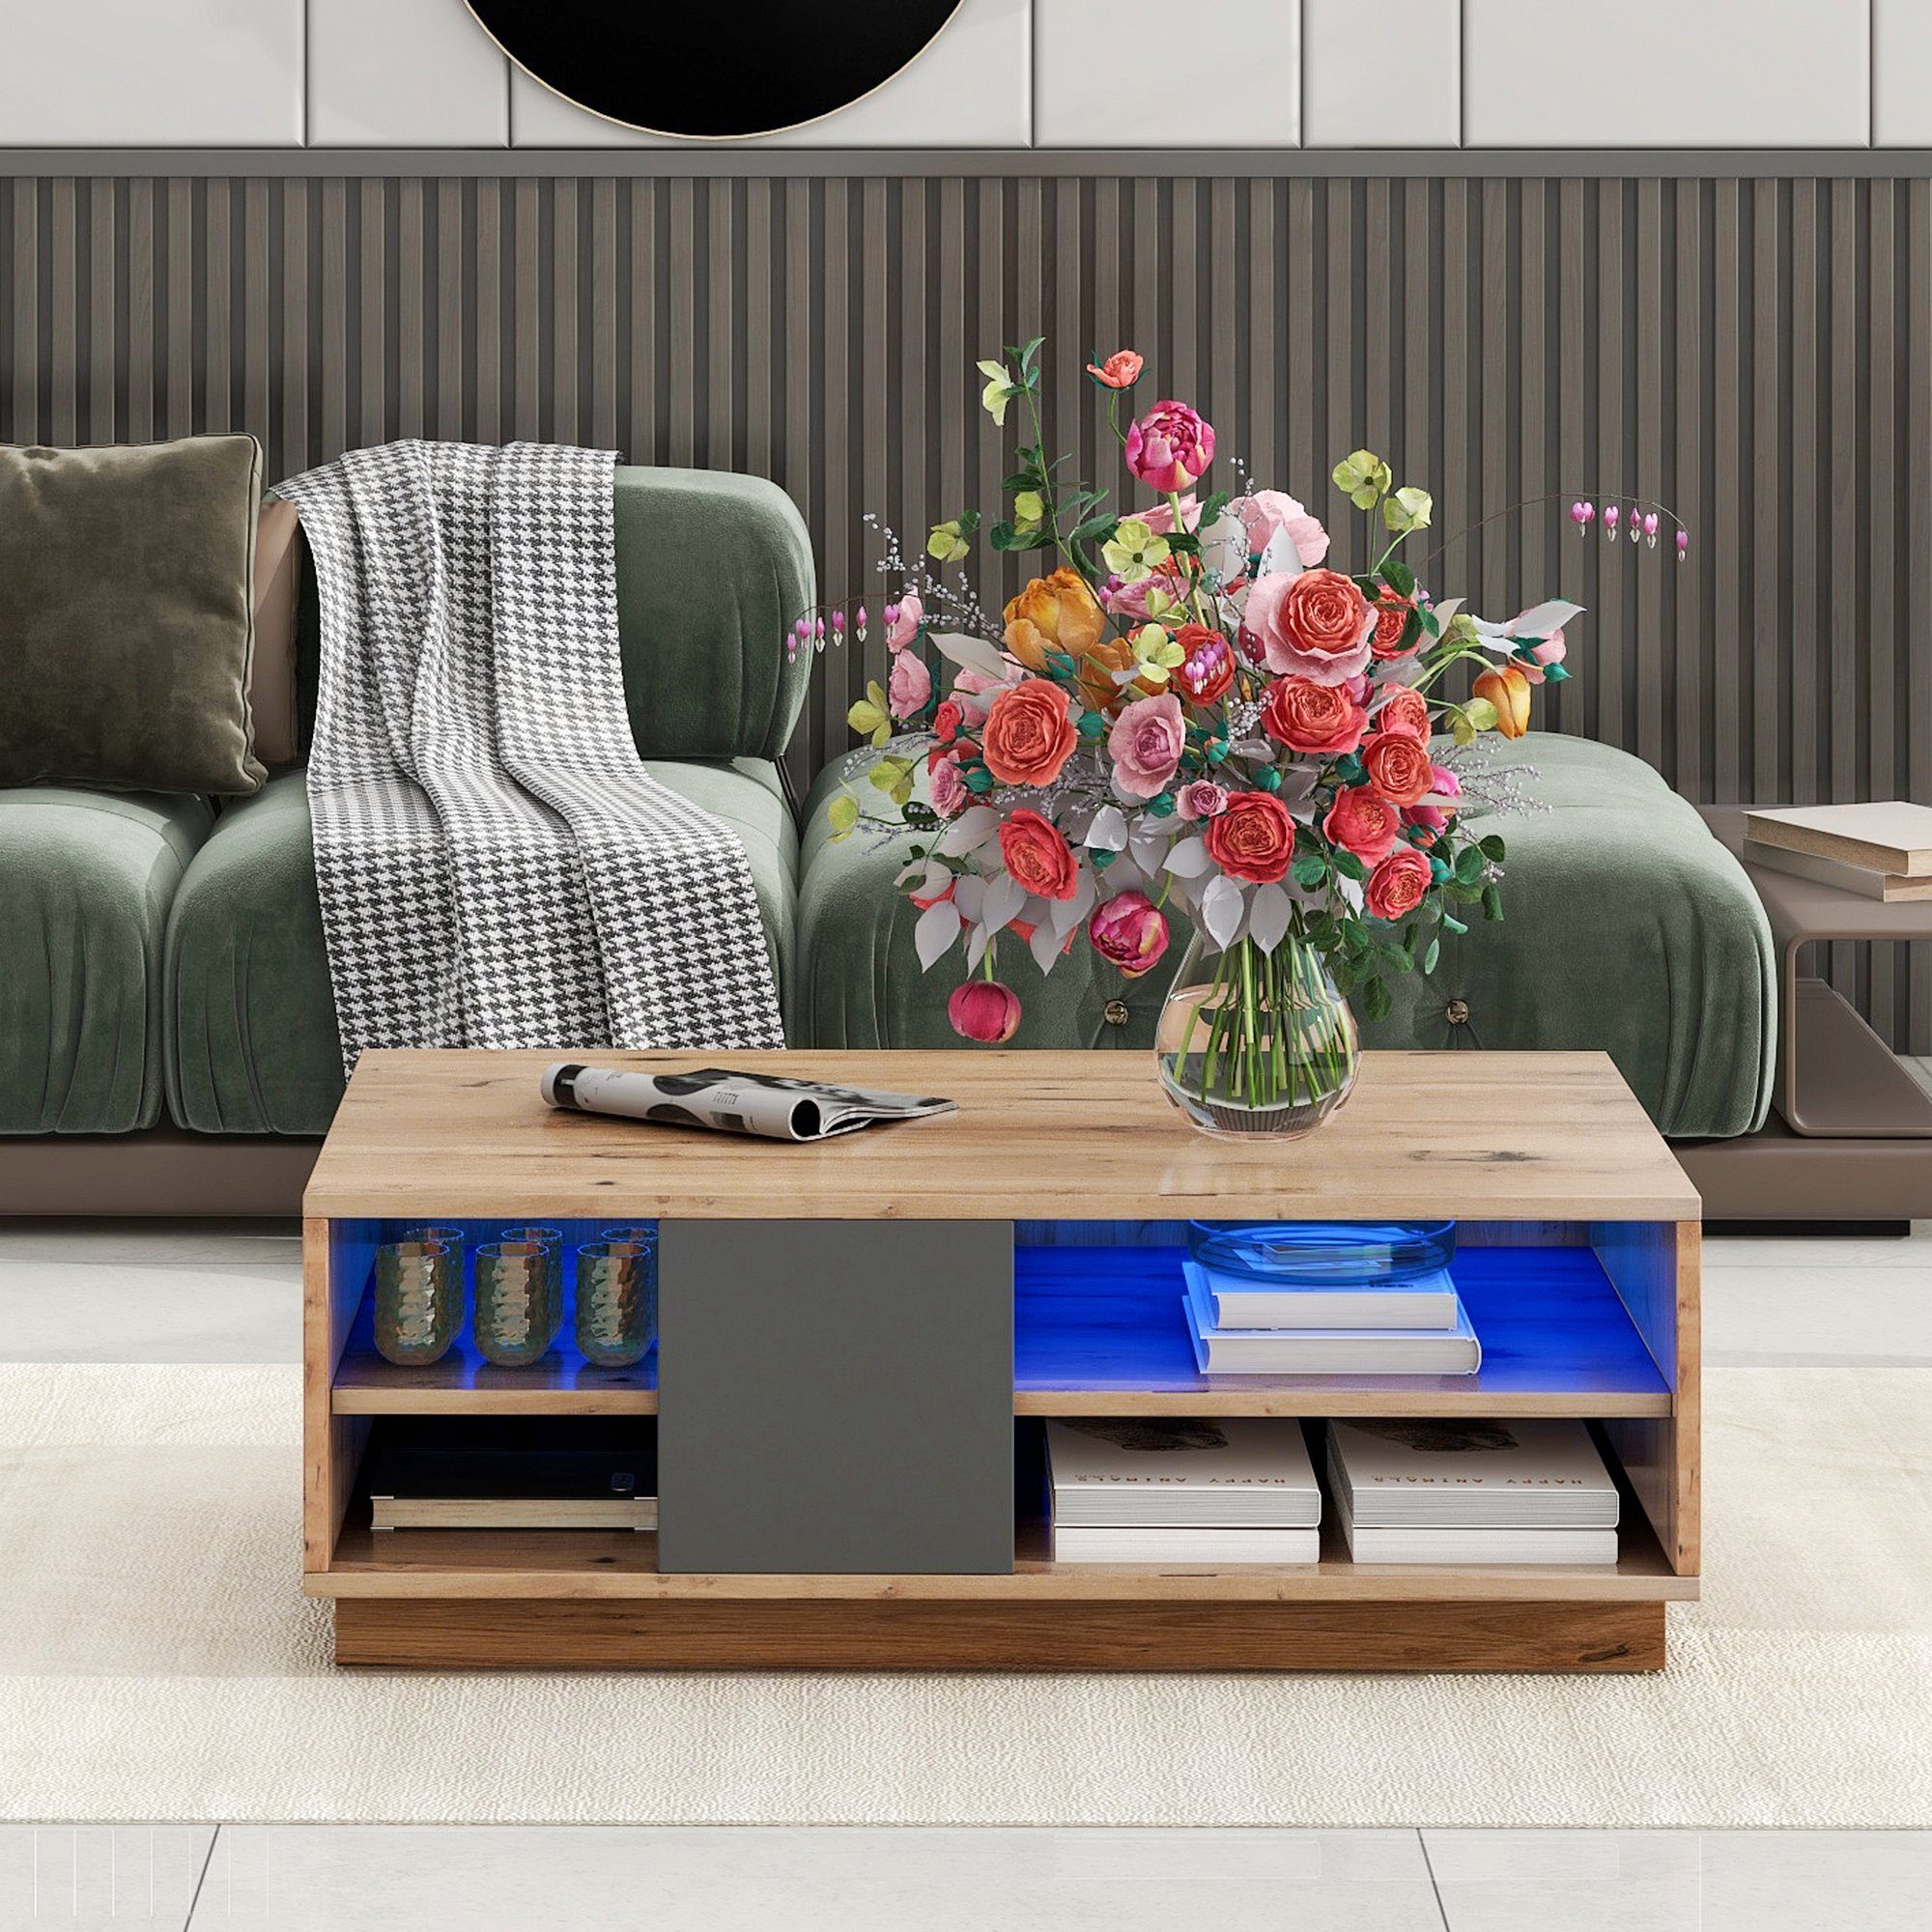 Celya Couchtisch Originalfarbener Mosaik-Couchtisch, moderne Wohnzimmermöbel, LED-Beleuchtung